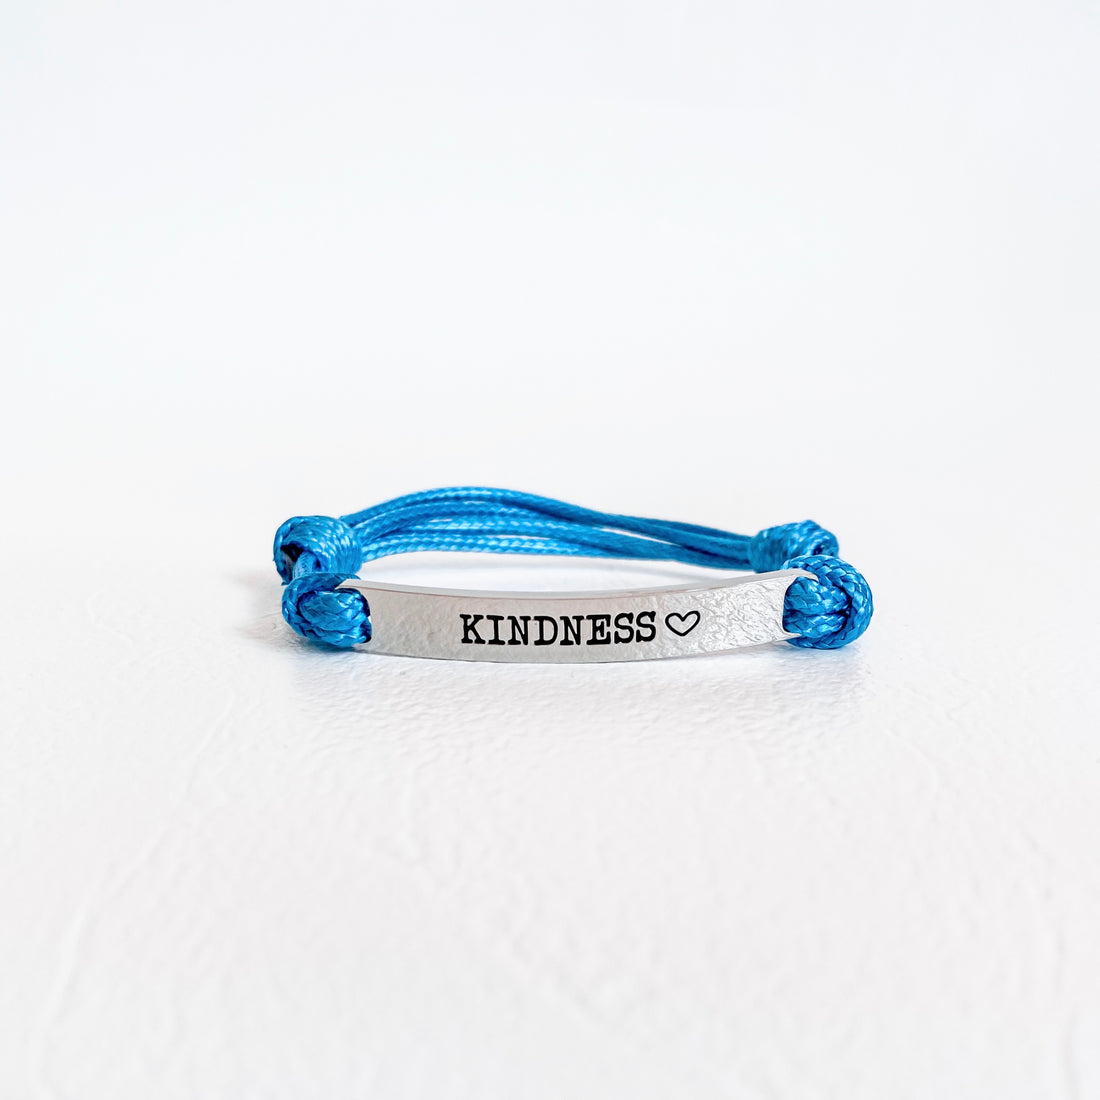 Kindness Bracelet - Blue